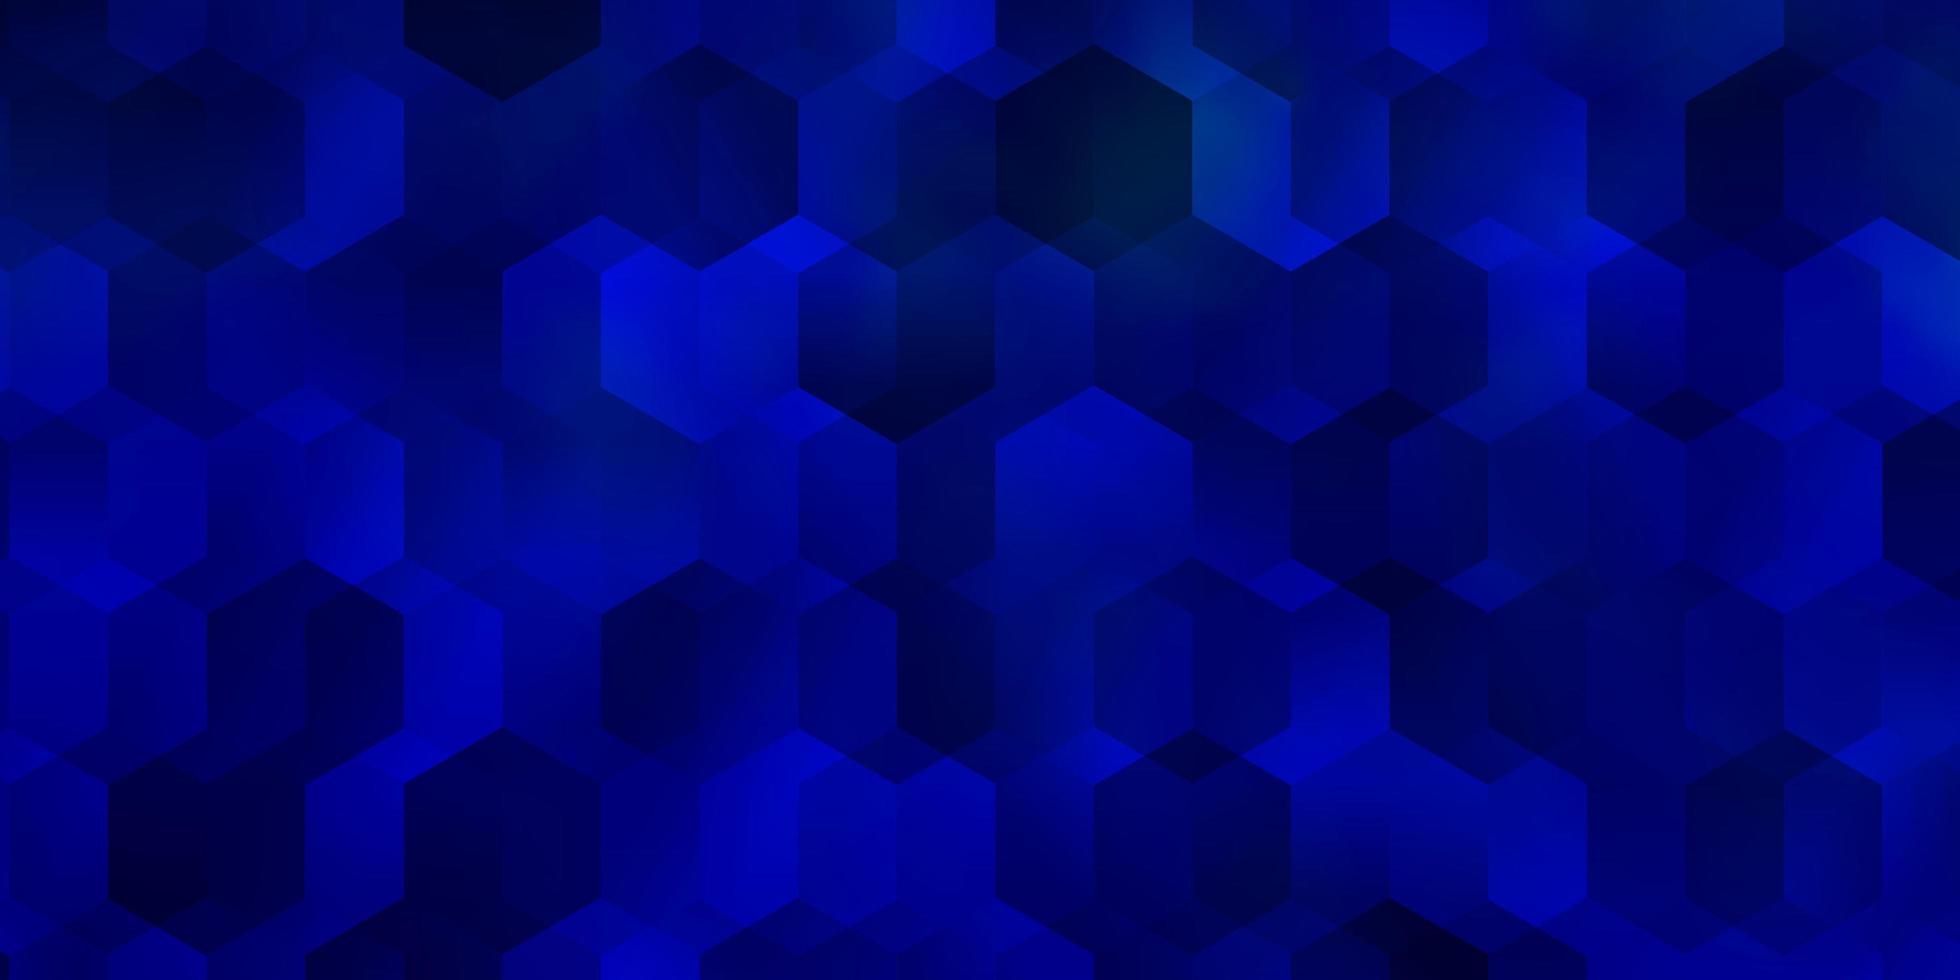 layout de vetor azul escuro com formas hexagonais.